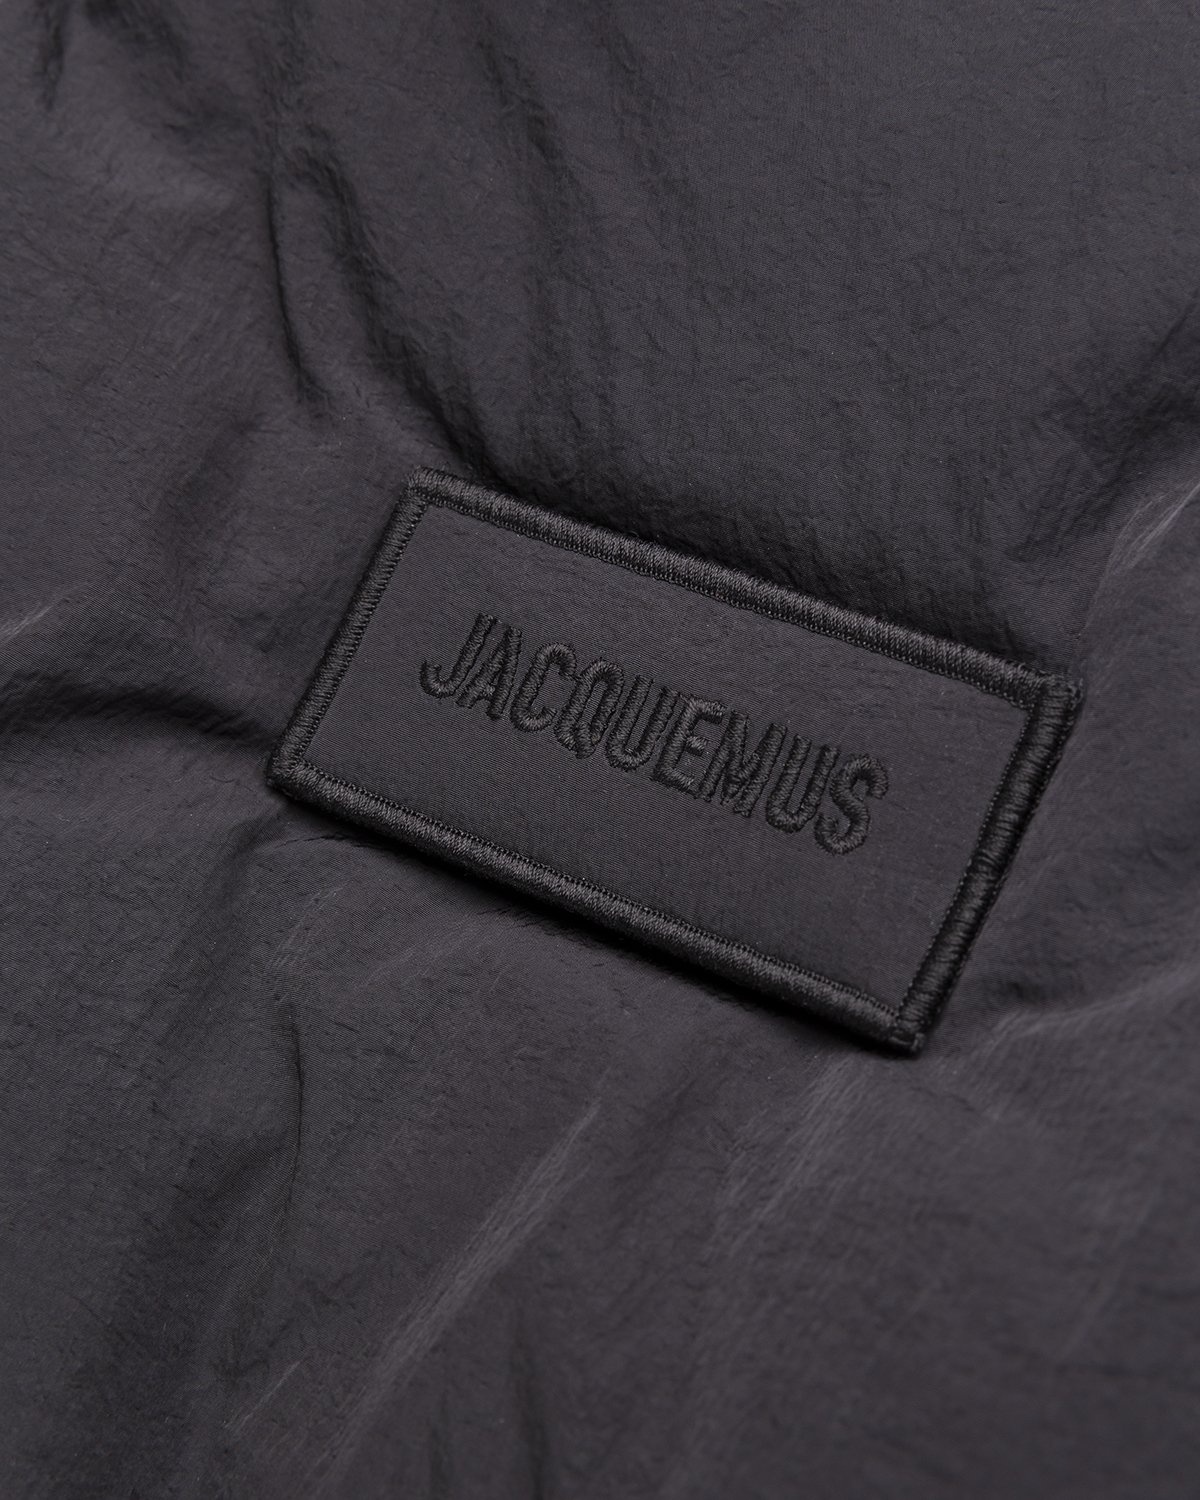 JACQUEMUS – La Doudoune Flocon Black - Outerwear - Black - Image 4